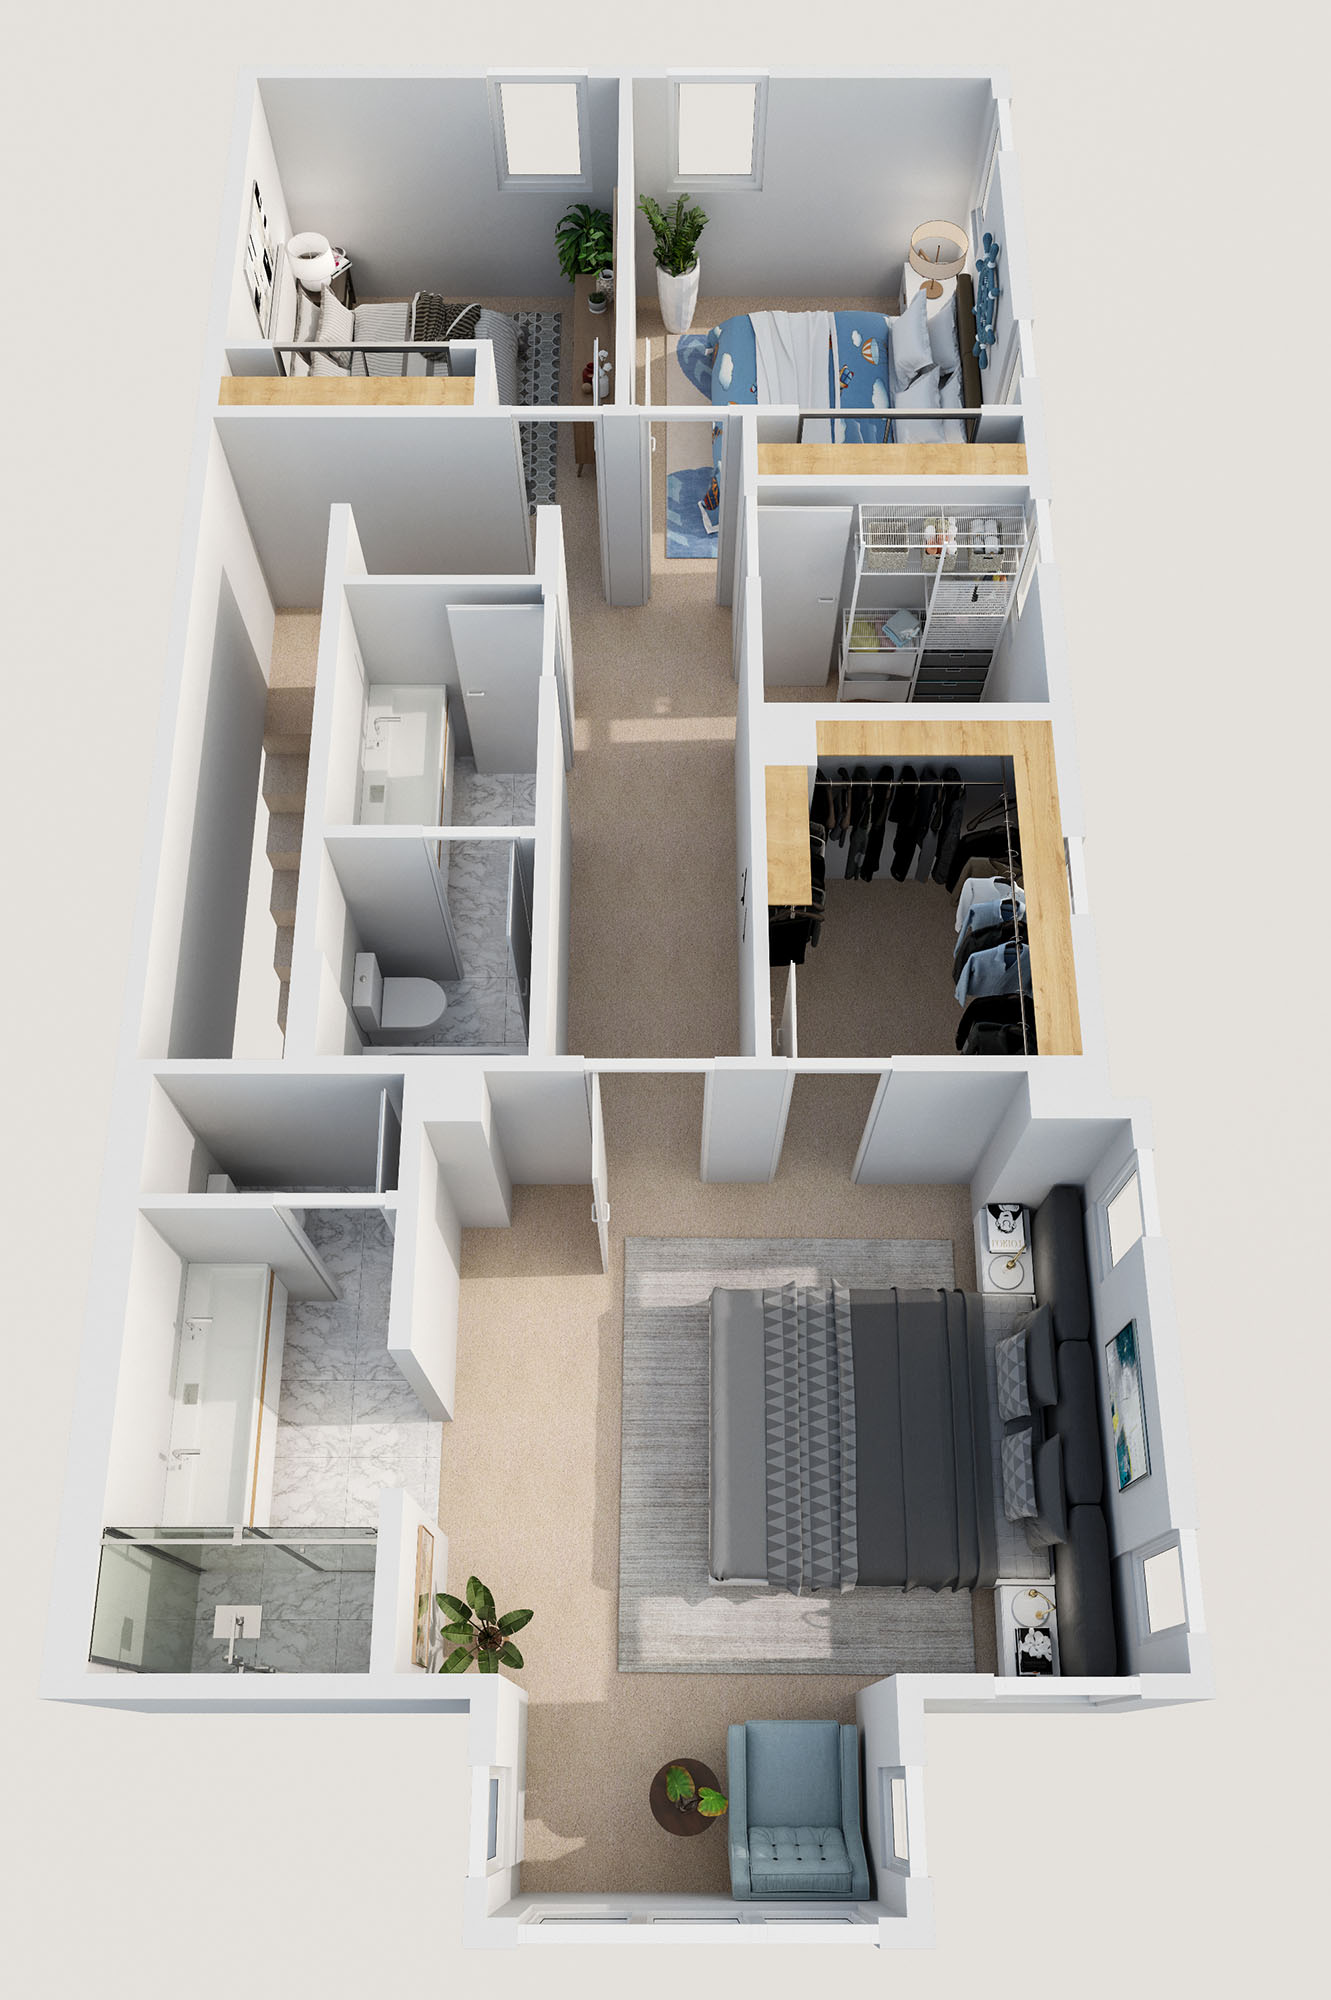 3D Floor Plan second floor